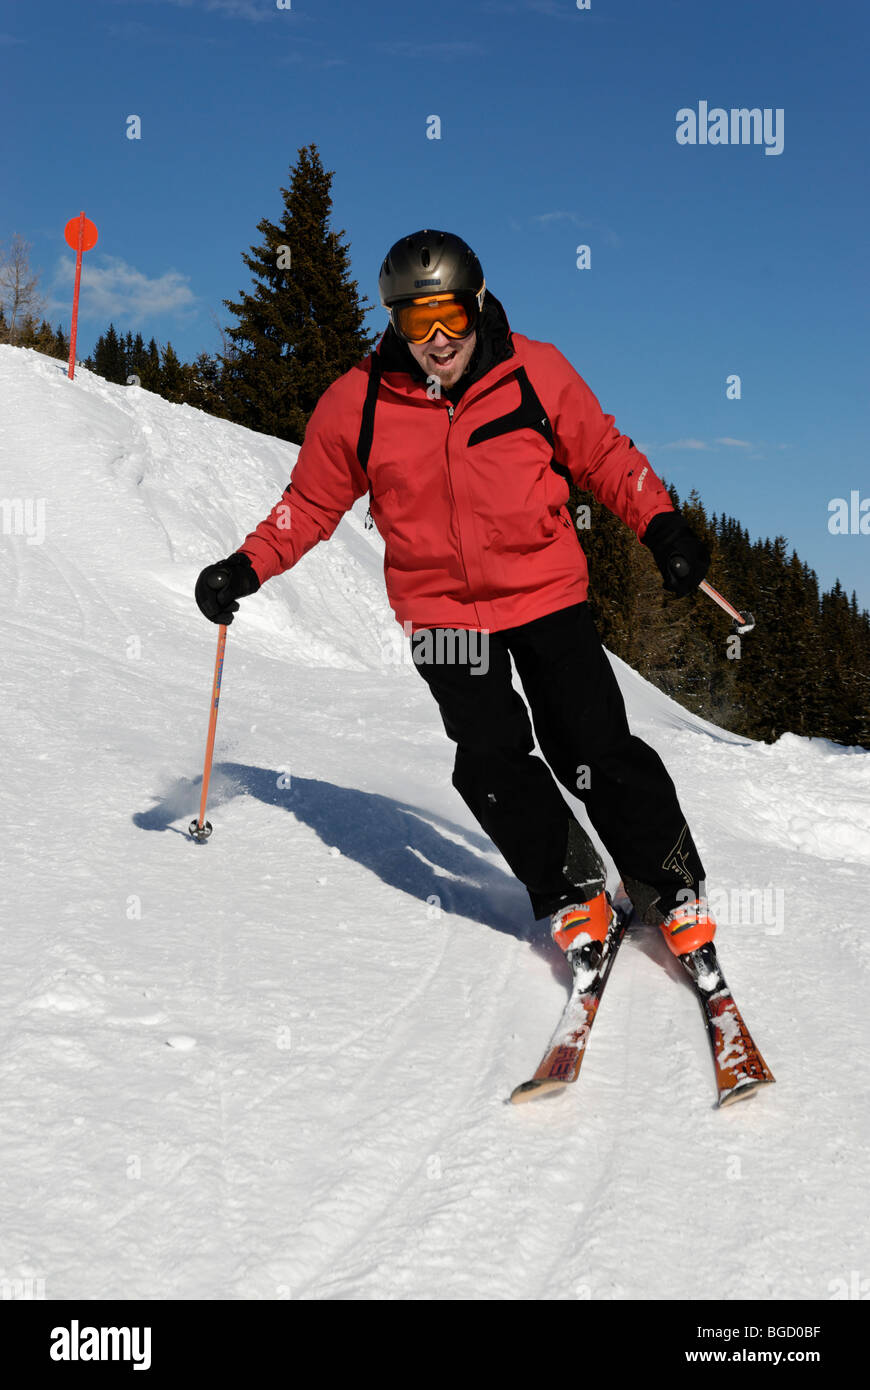 Ski nautique, ski alpin, pistes de ski alpin. Banque D'Images